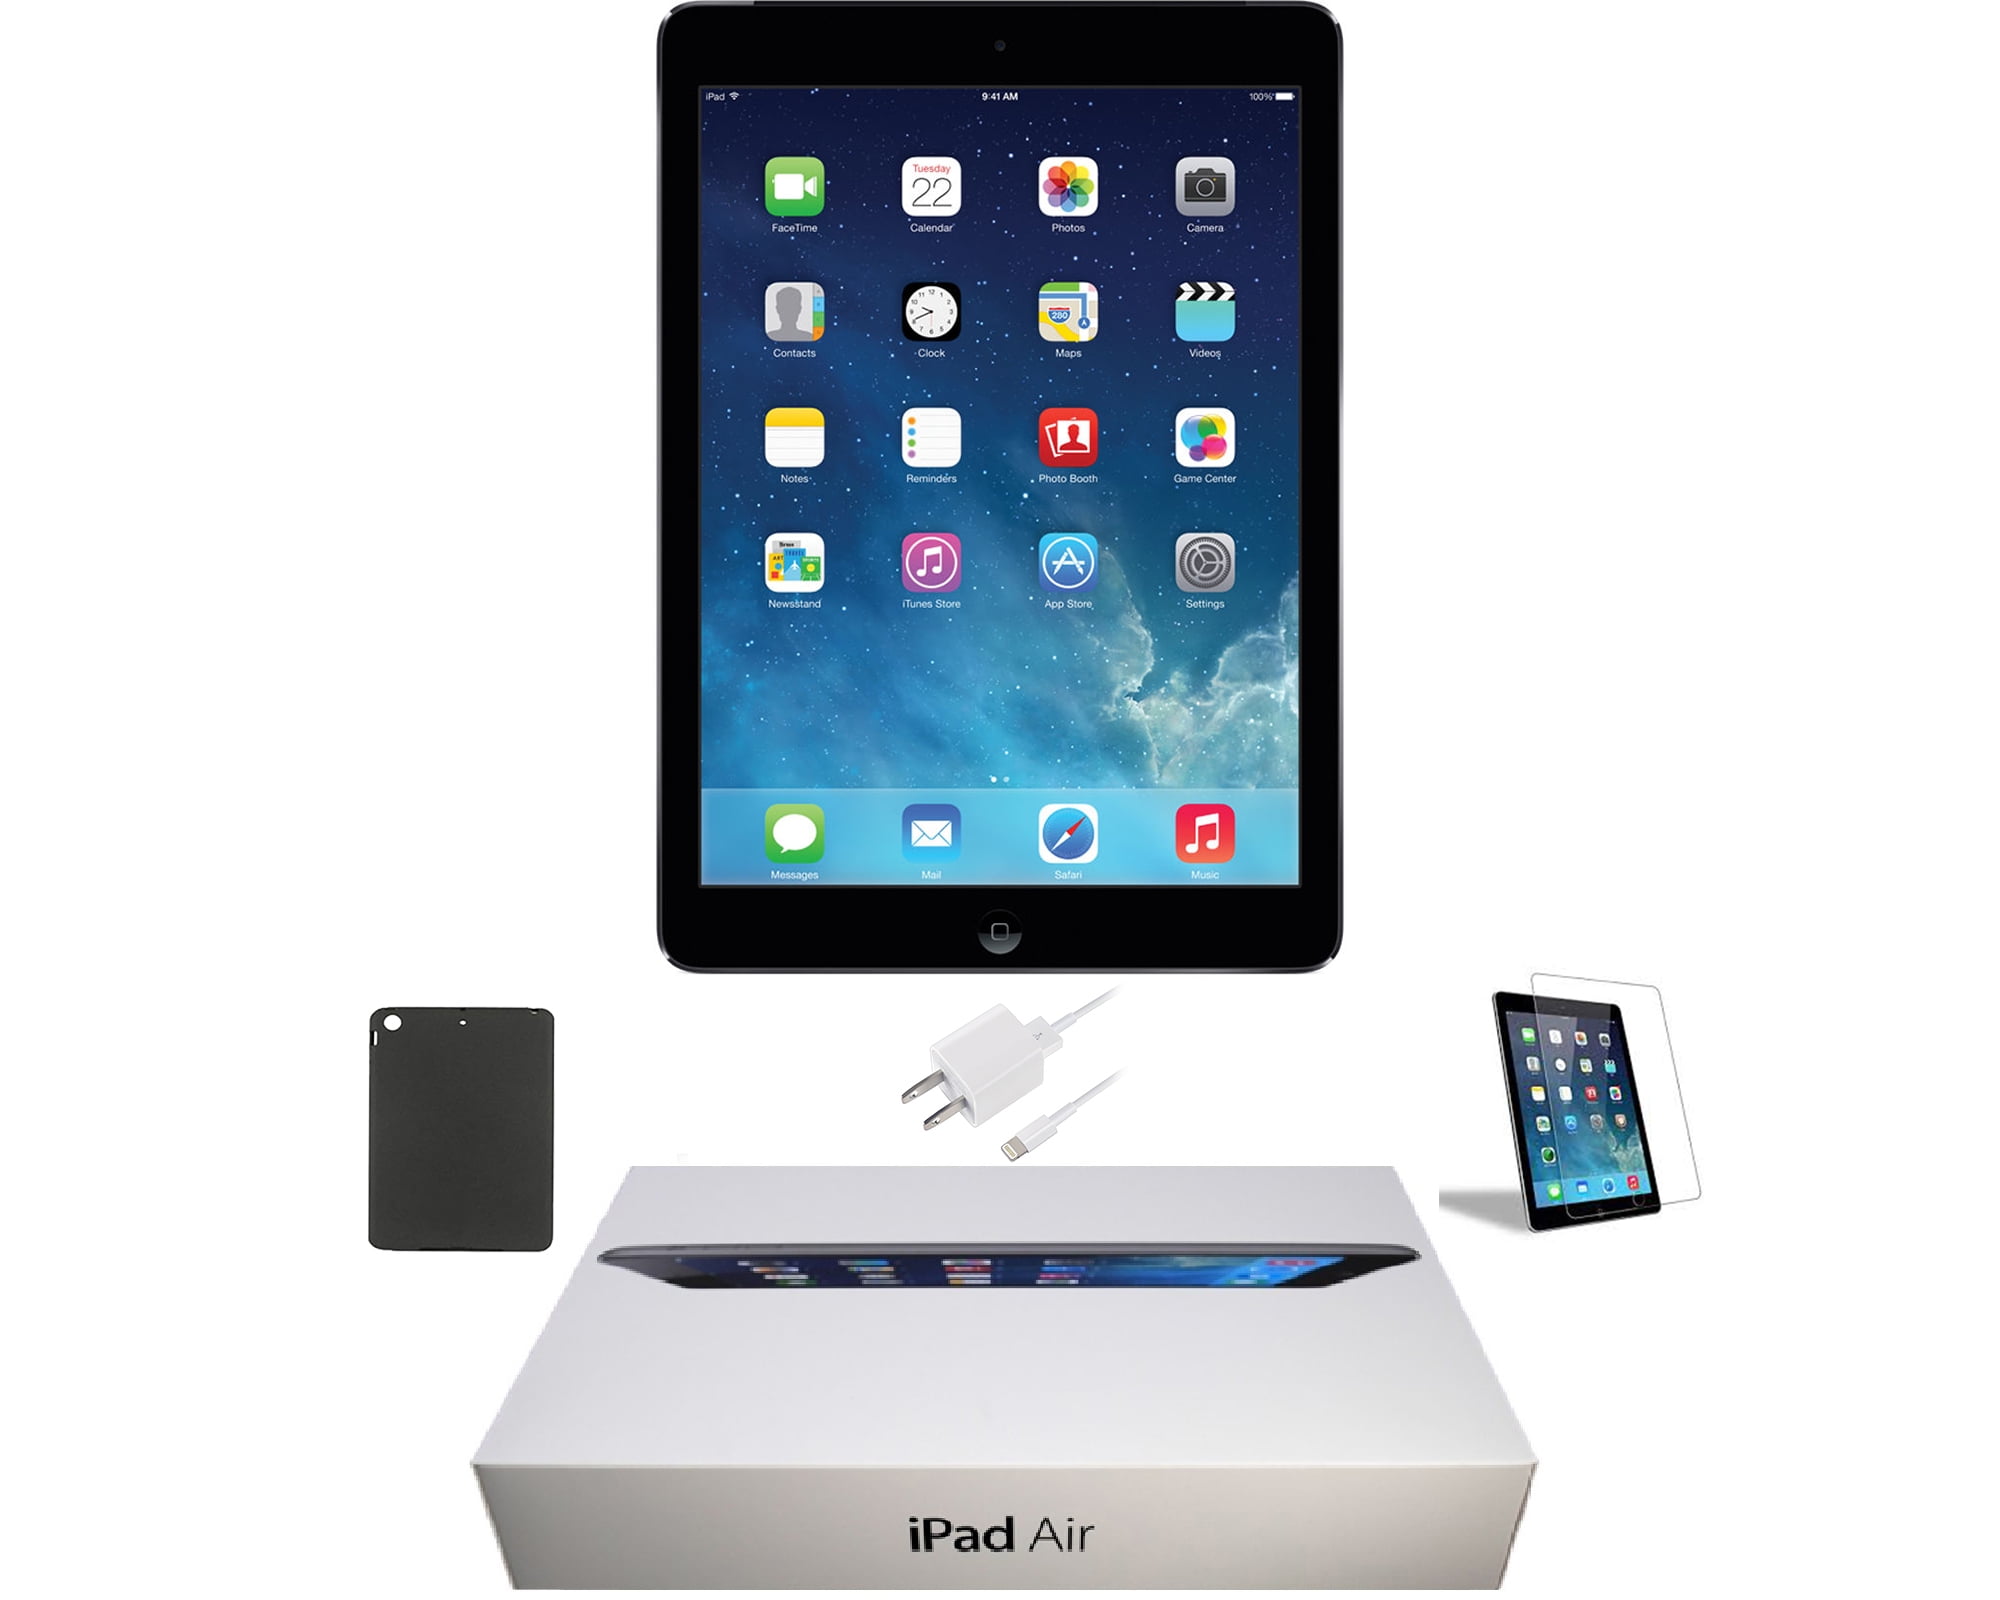 Apple iPad Air 1st Wi-Fi I 16GB 32GB 64GB or 128GB I GRAY SILVER R GRADE A 